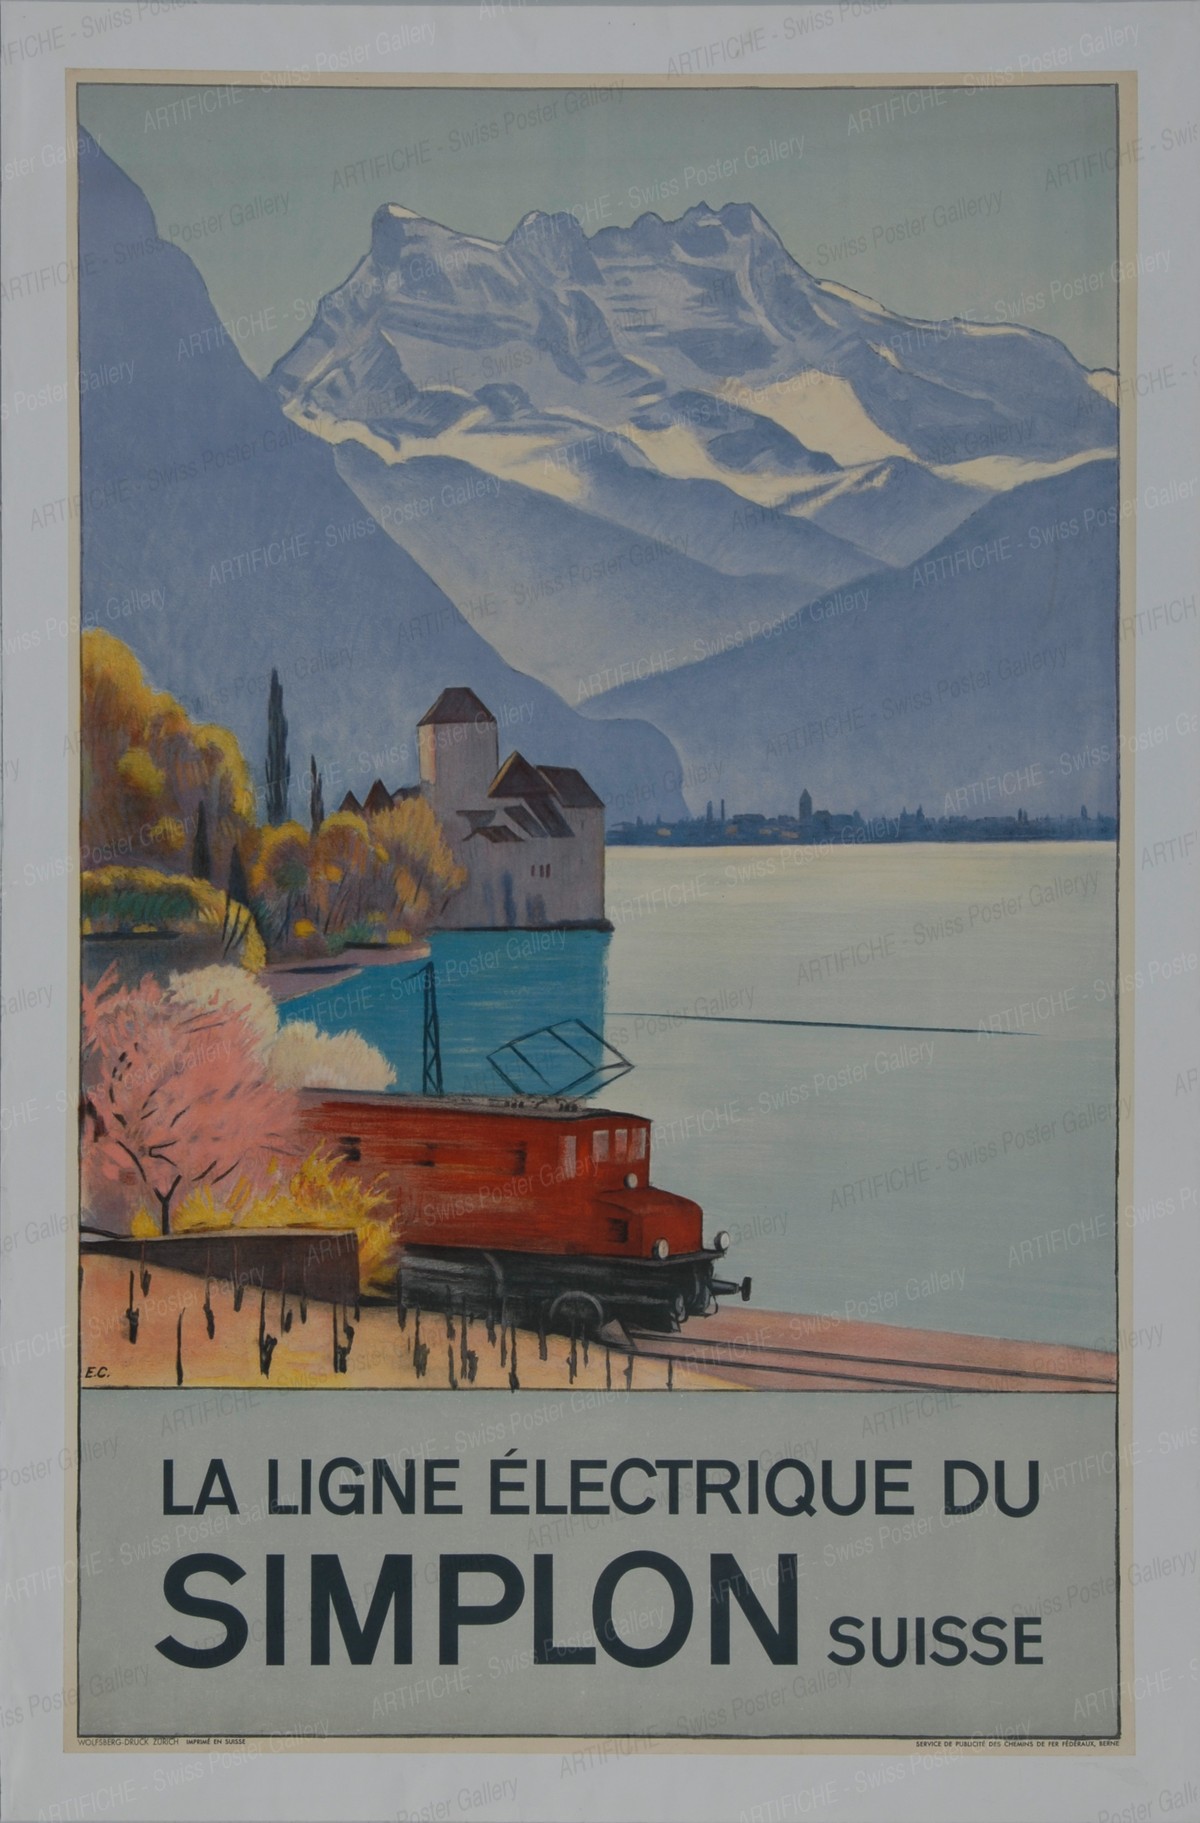 LA LIGNE ELECTRIQUE DU SIMPLON – Suisse, Emil Cardinaux